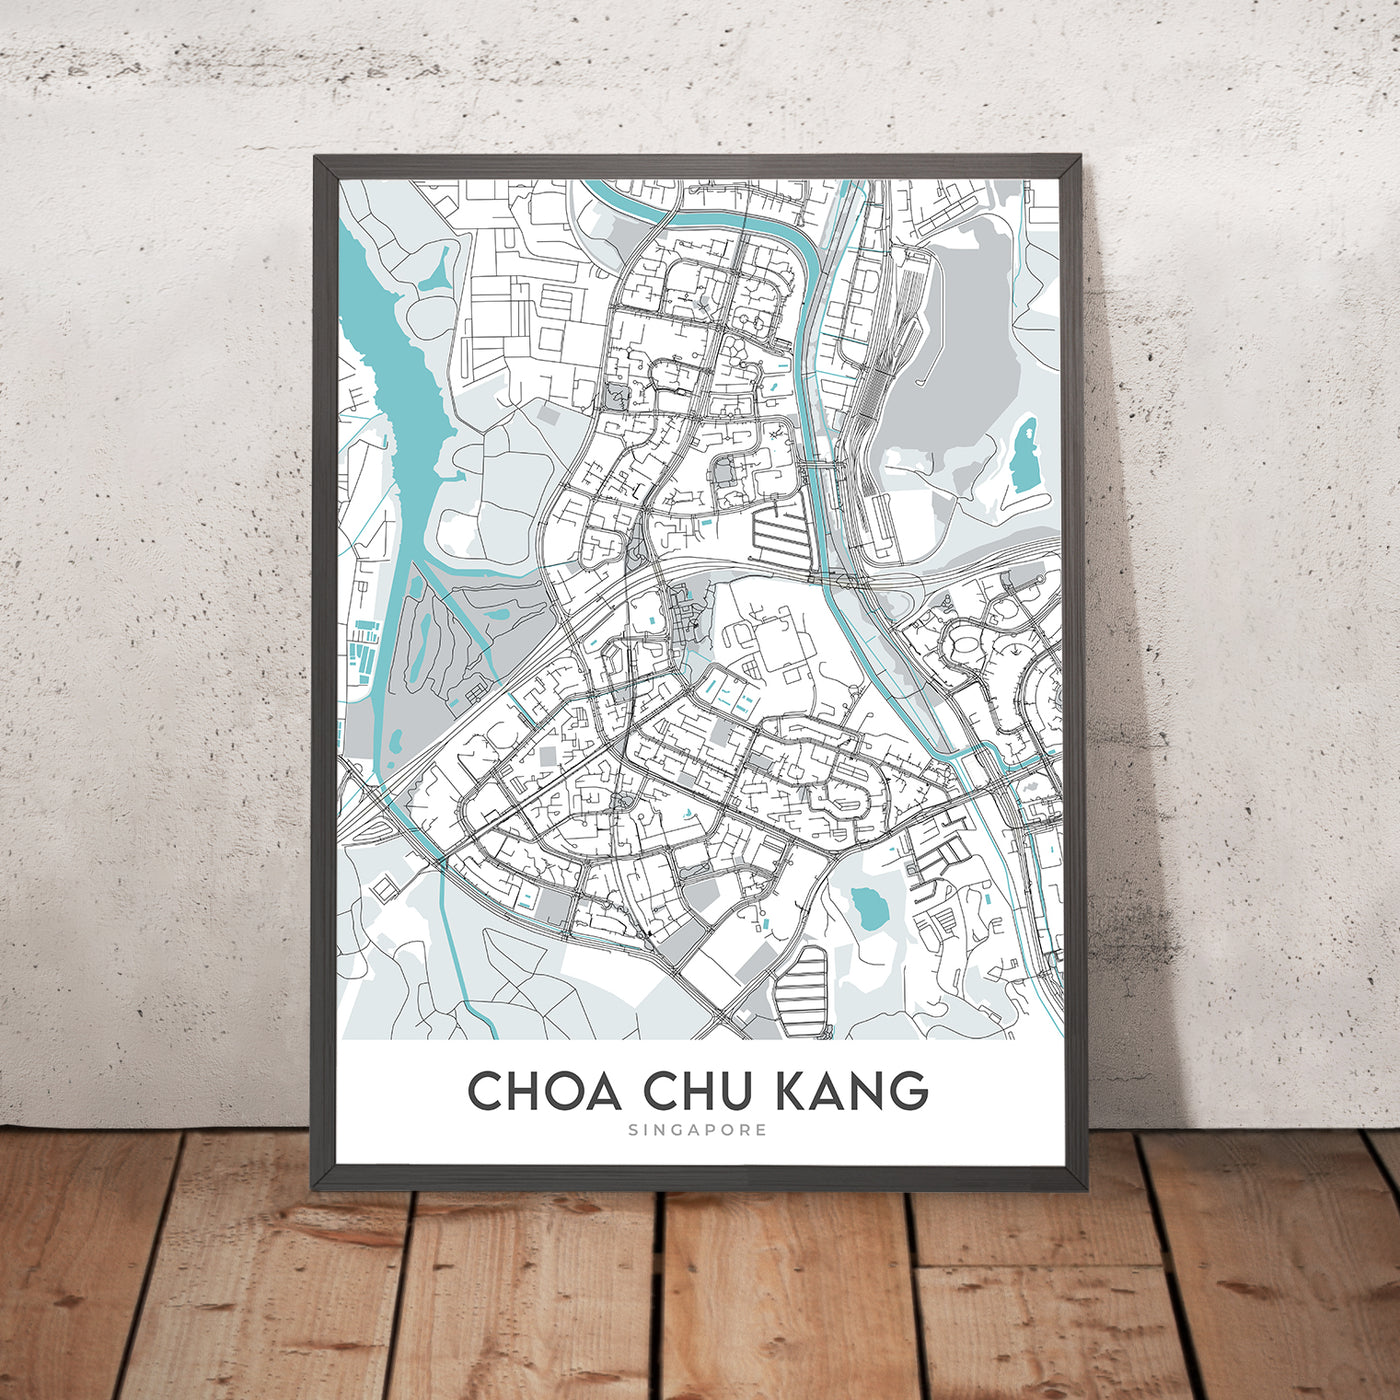 Plan de la ville moderne de Choa Chu Kang, Singapour : station MRT, centre commercial Lot One, parc CCK, club de golf Warren, centre Teck Whye